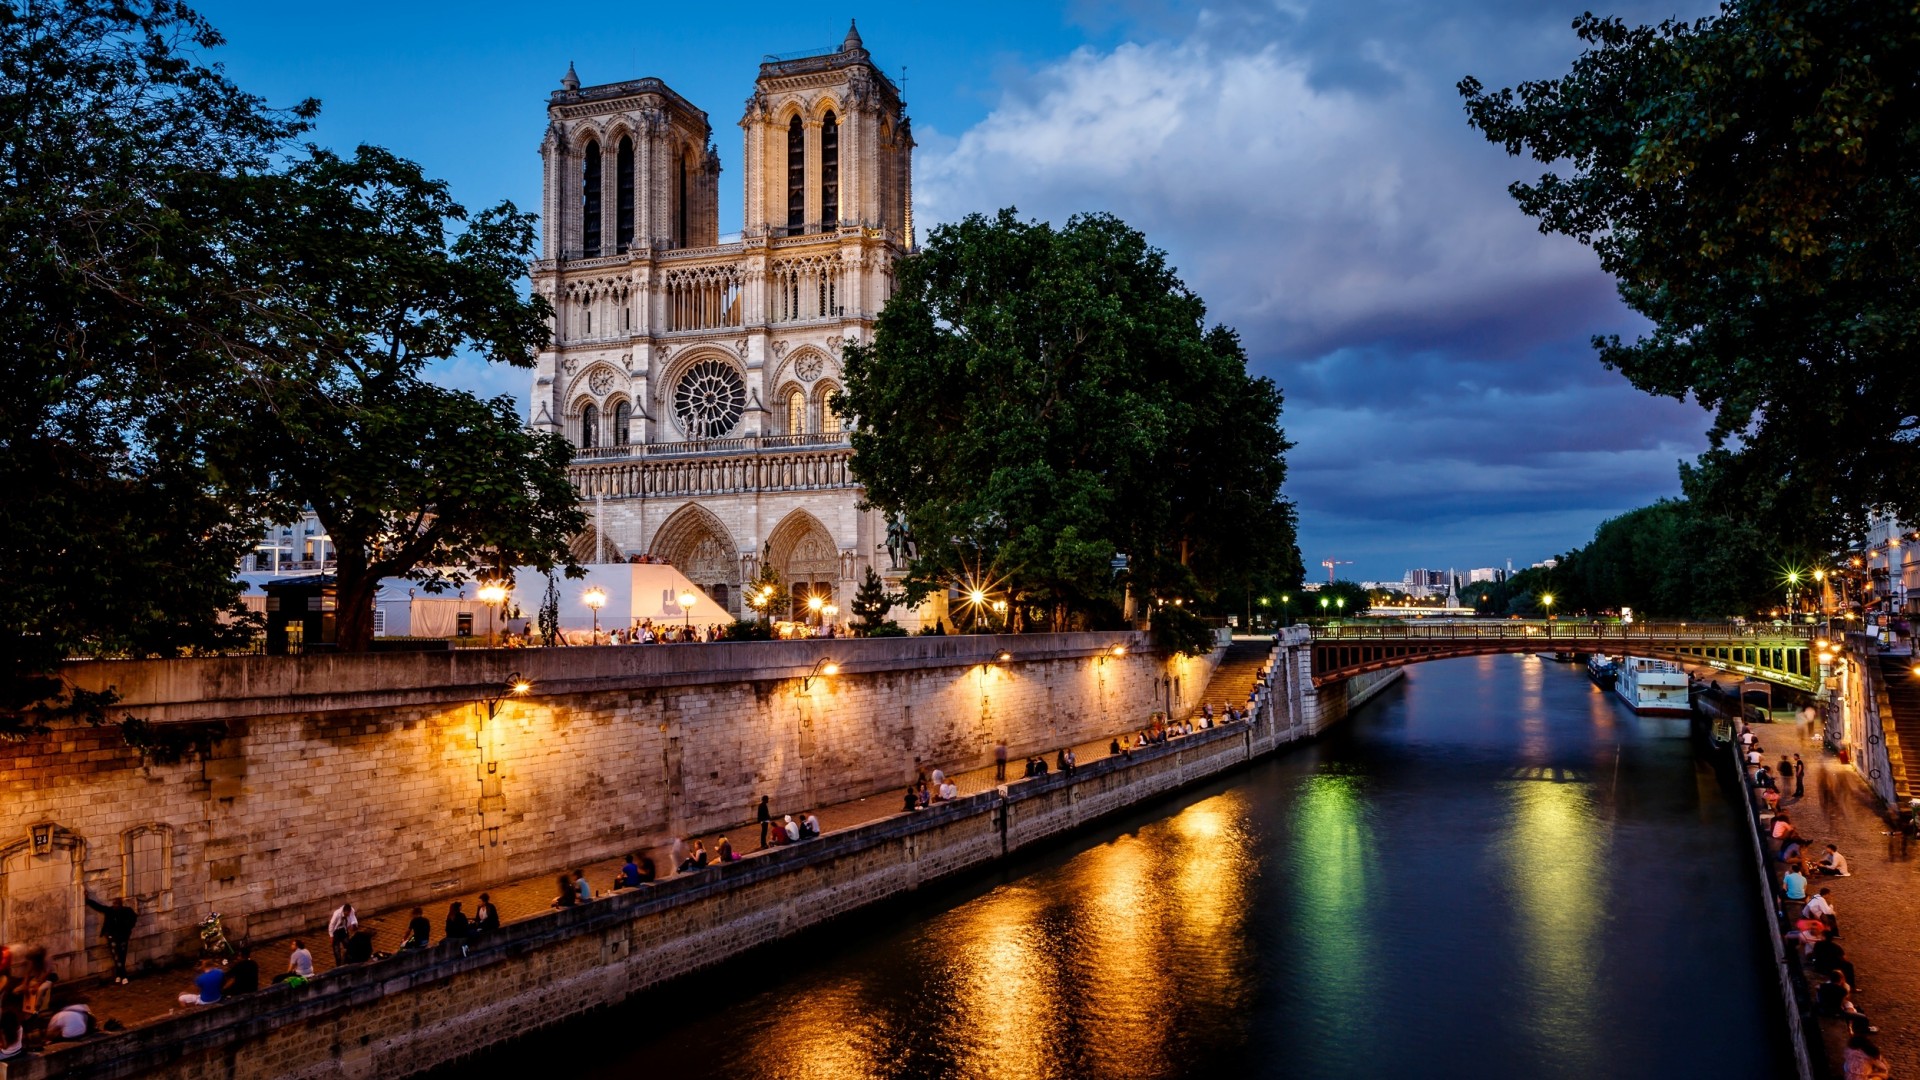 法国巴黎圣母院建筑,河流,夜幕降临,风景壁纸